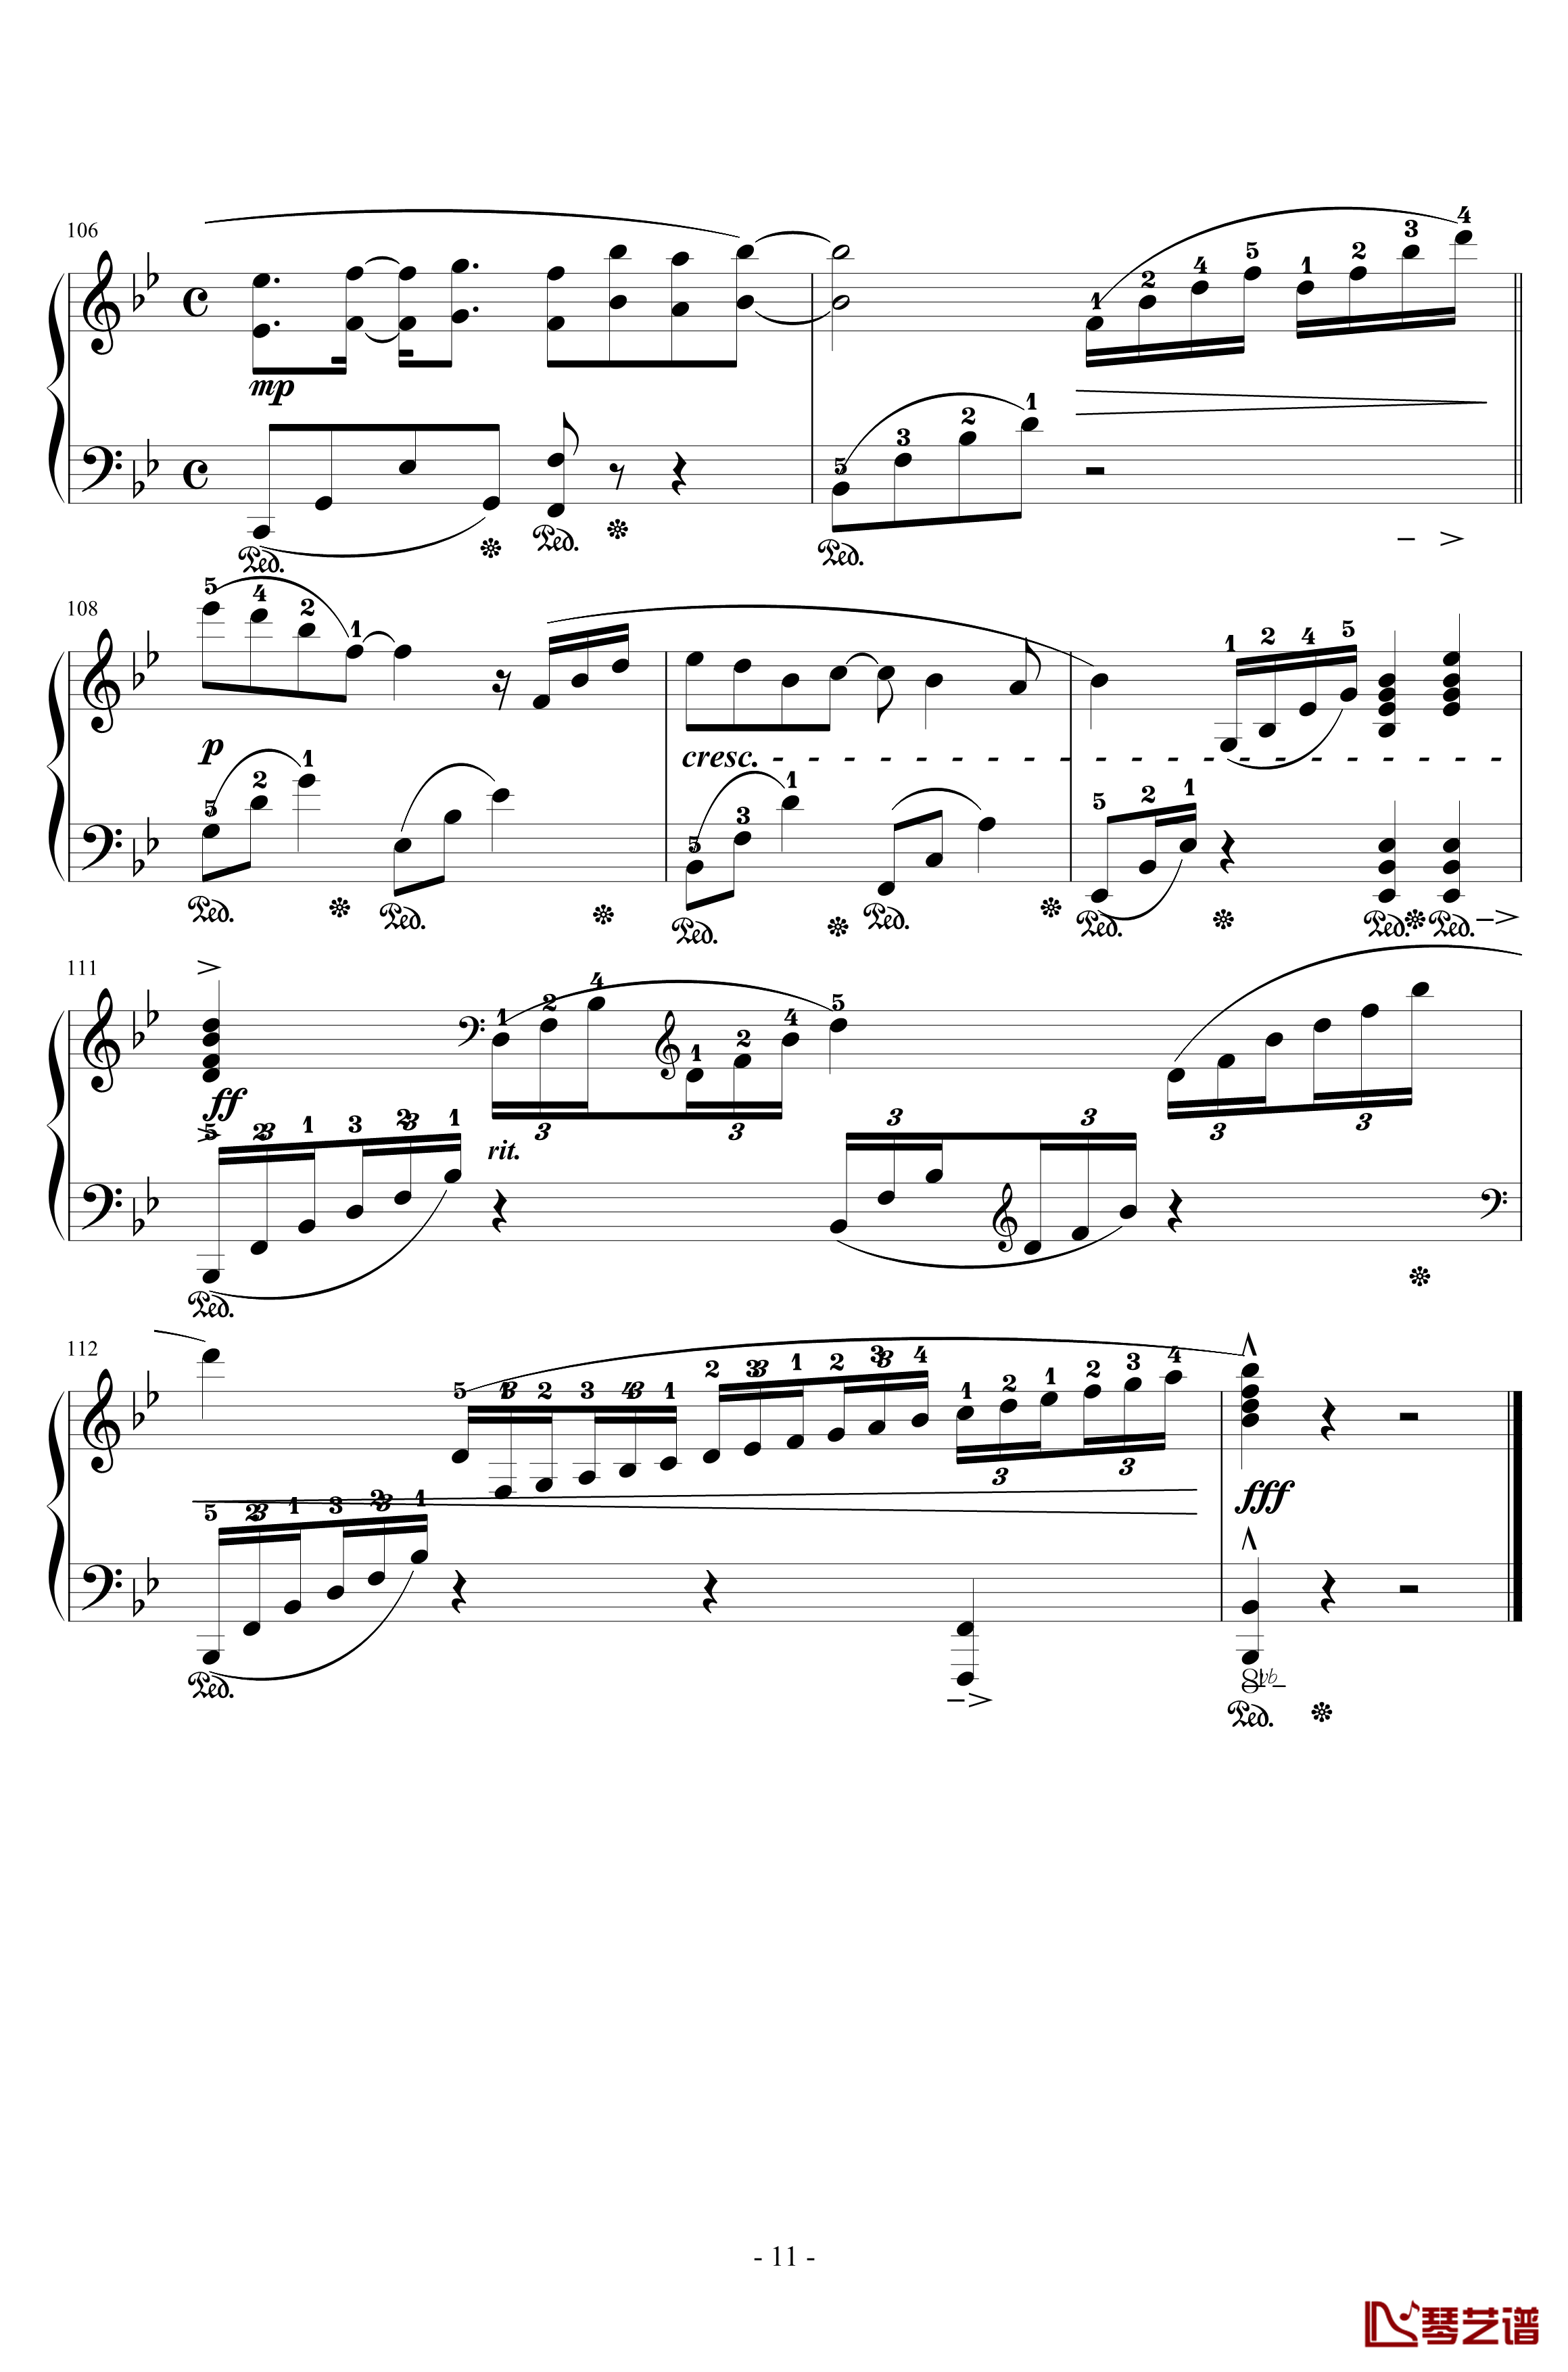 樱之雨钢琴谱-交响乐版-初音未来11